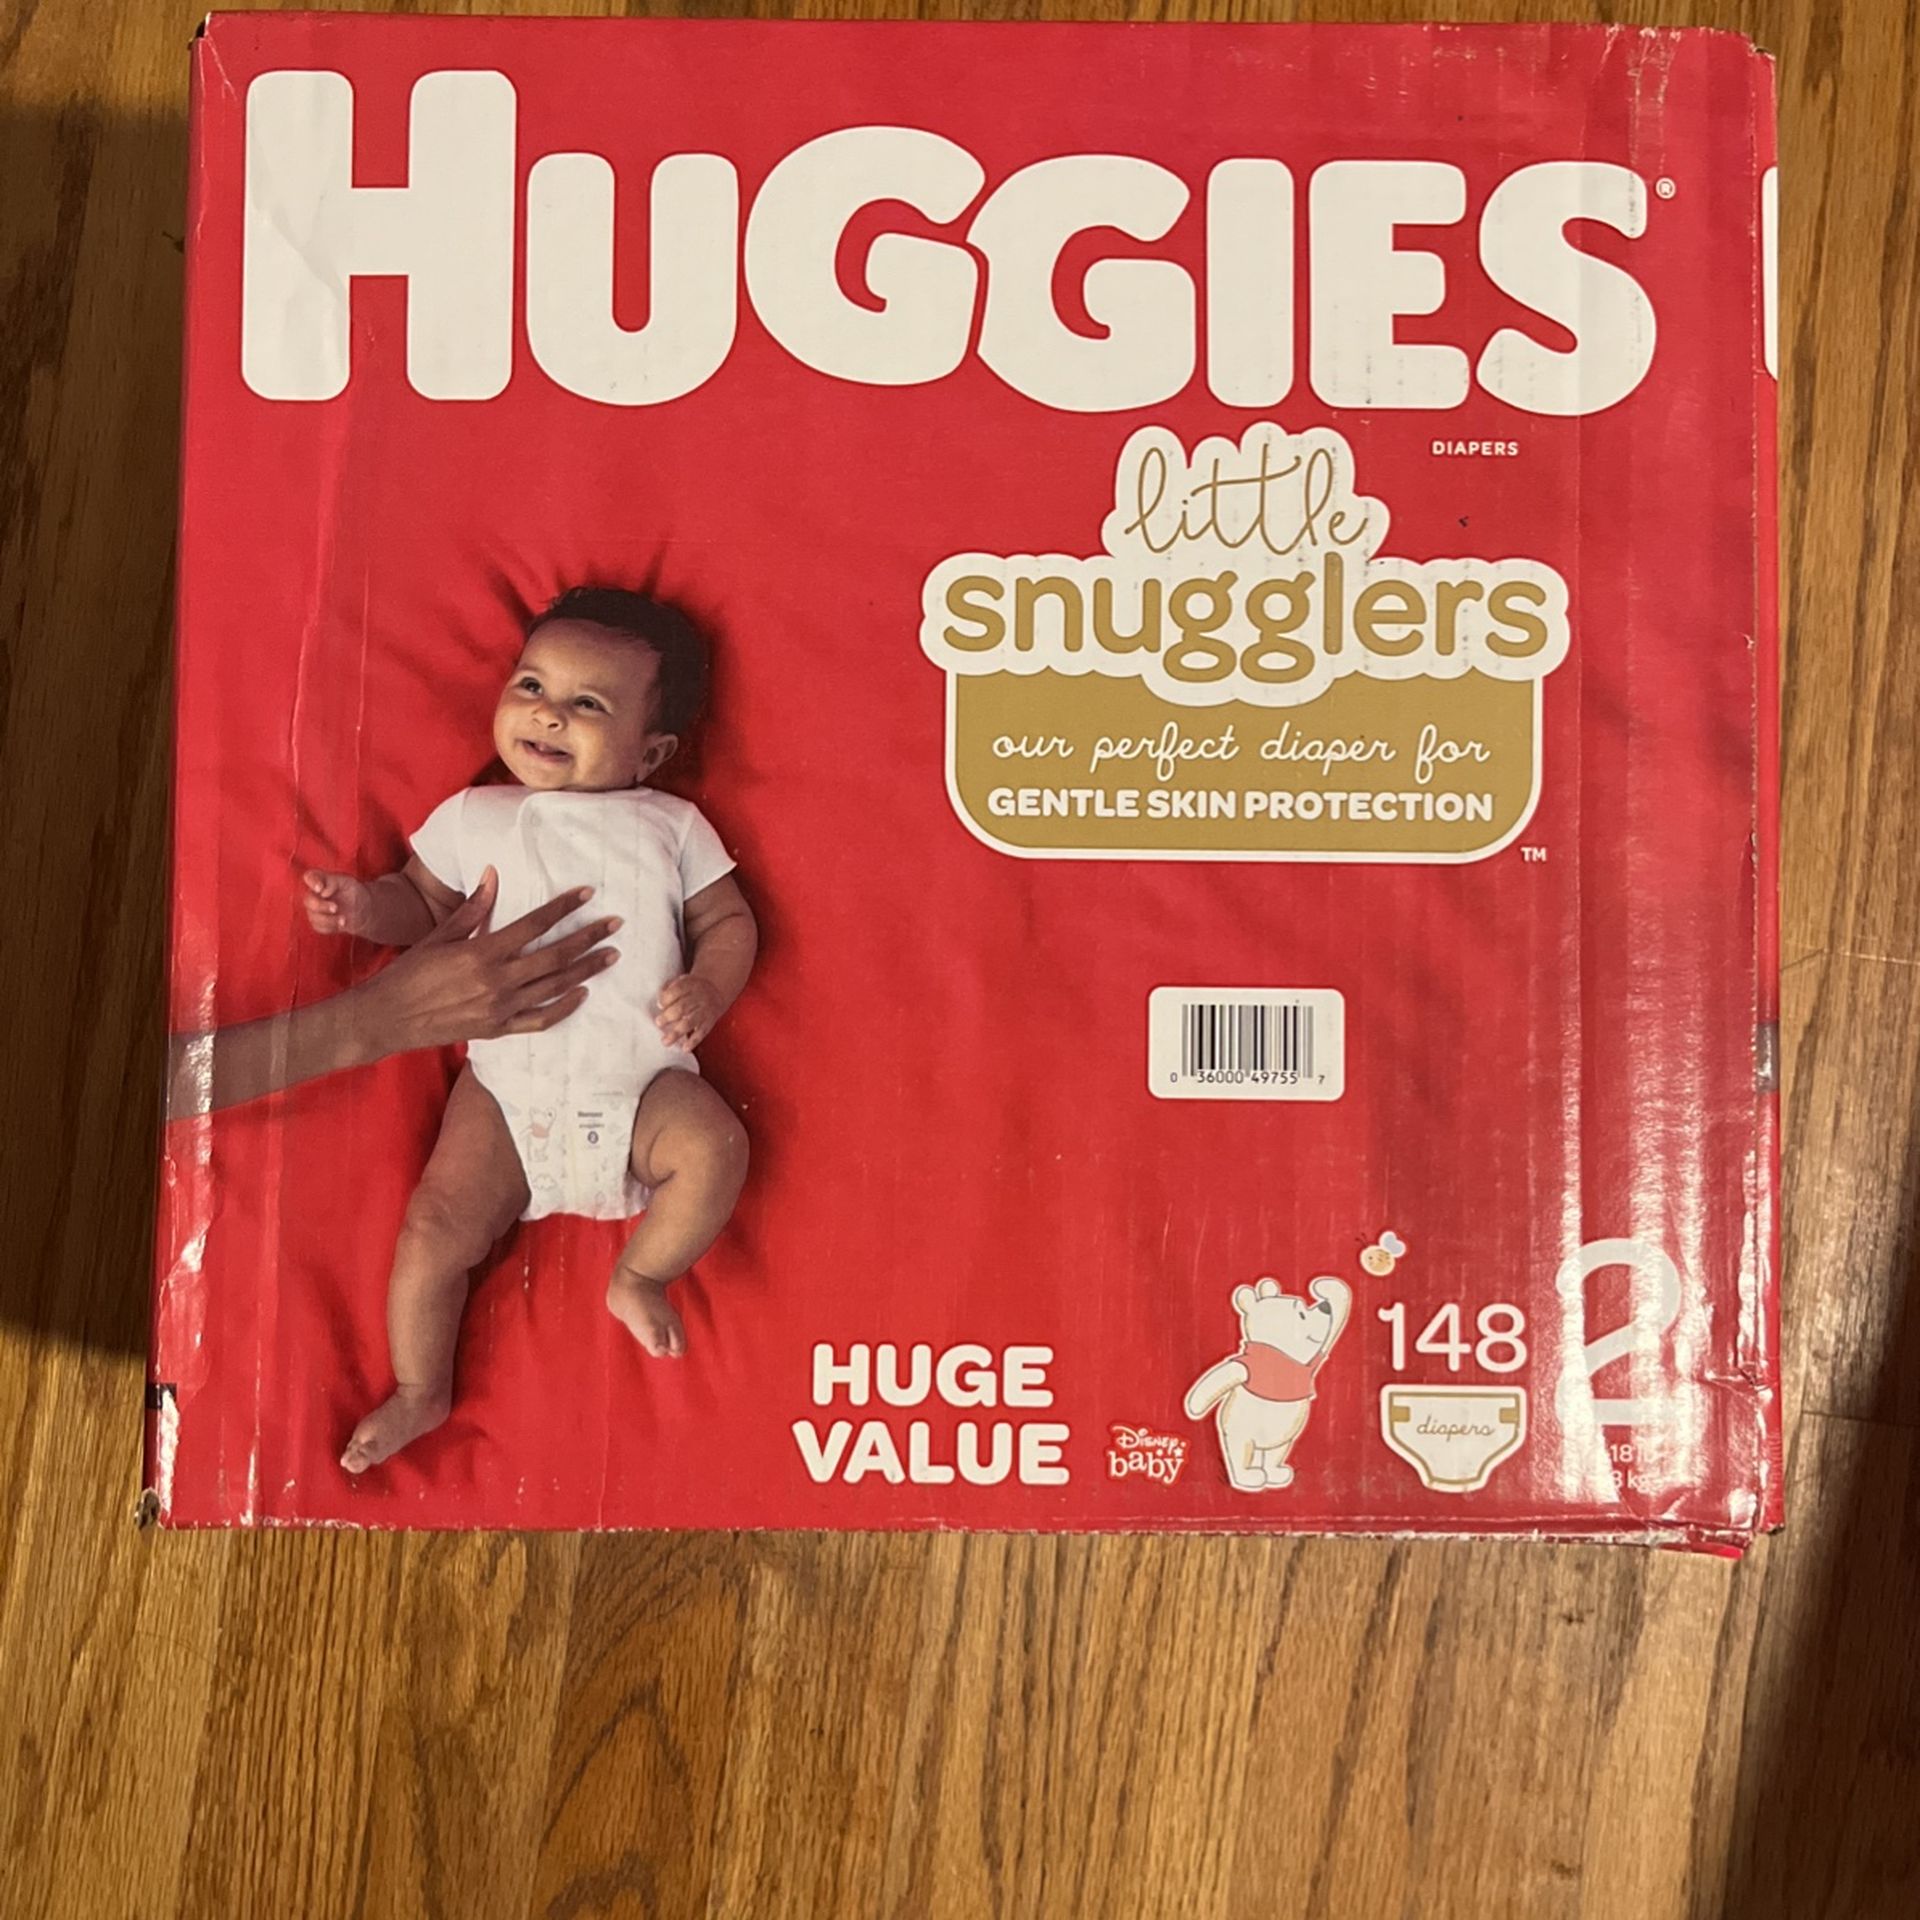 Huggies Diaper’s 